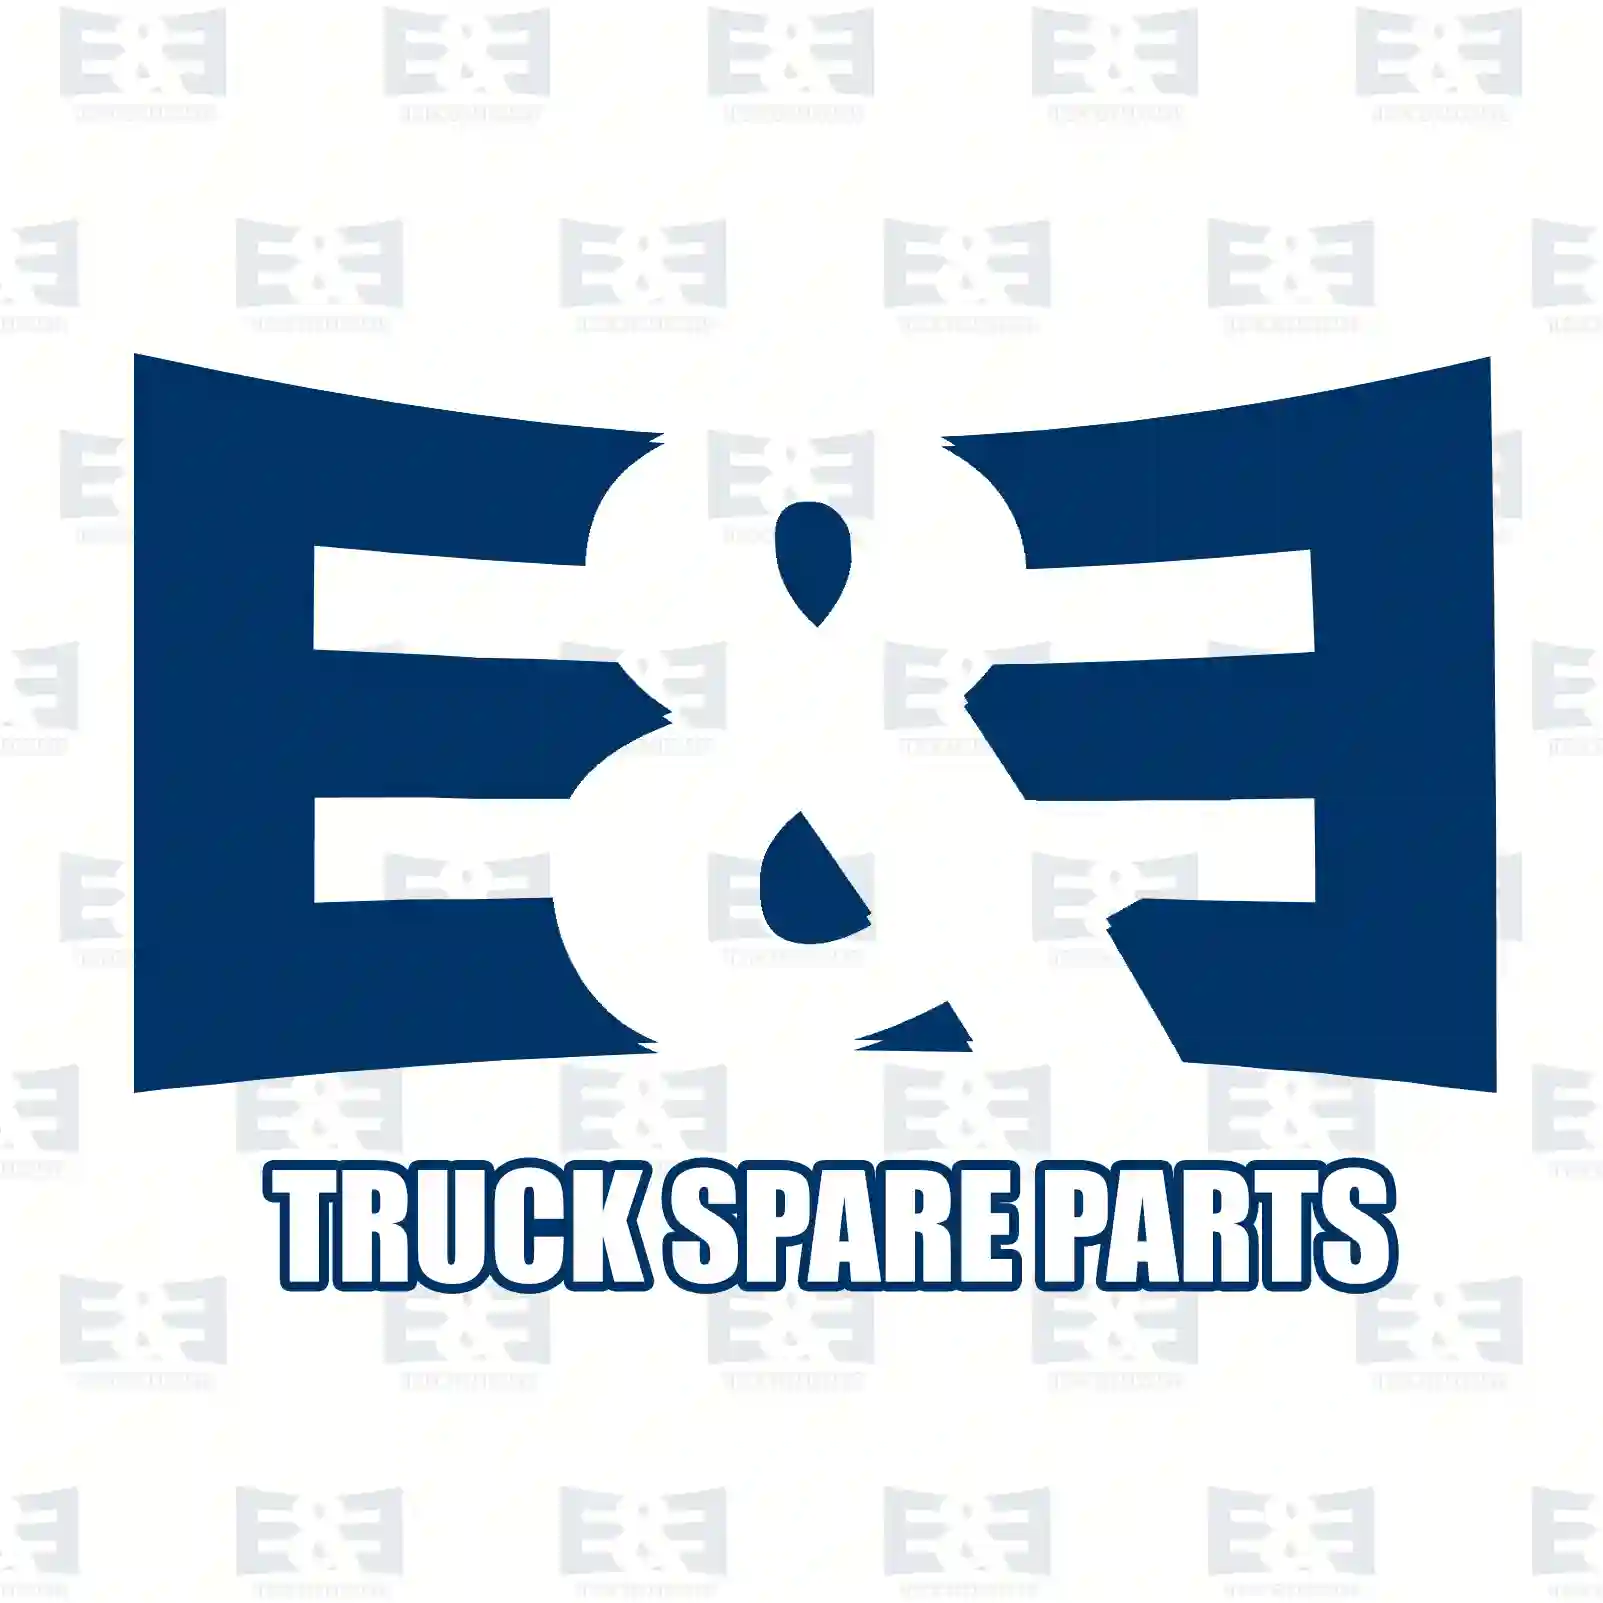 Turbocharger, 2E2200600, 6110960599, 6110961499, 611096149980 ||  2E2200600 E&E Truck Spare Parts | Truck Spare Parts, Auotomotive Spare Parts Turbocharger, 2E2200600, 6110960599, 6110961499, 611096149980 ||  2E2200600 E&E Truck Spare Parts | Truck Spare Parts, Auotomotive Spare Parts